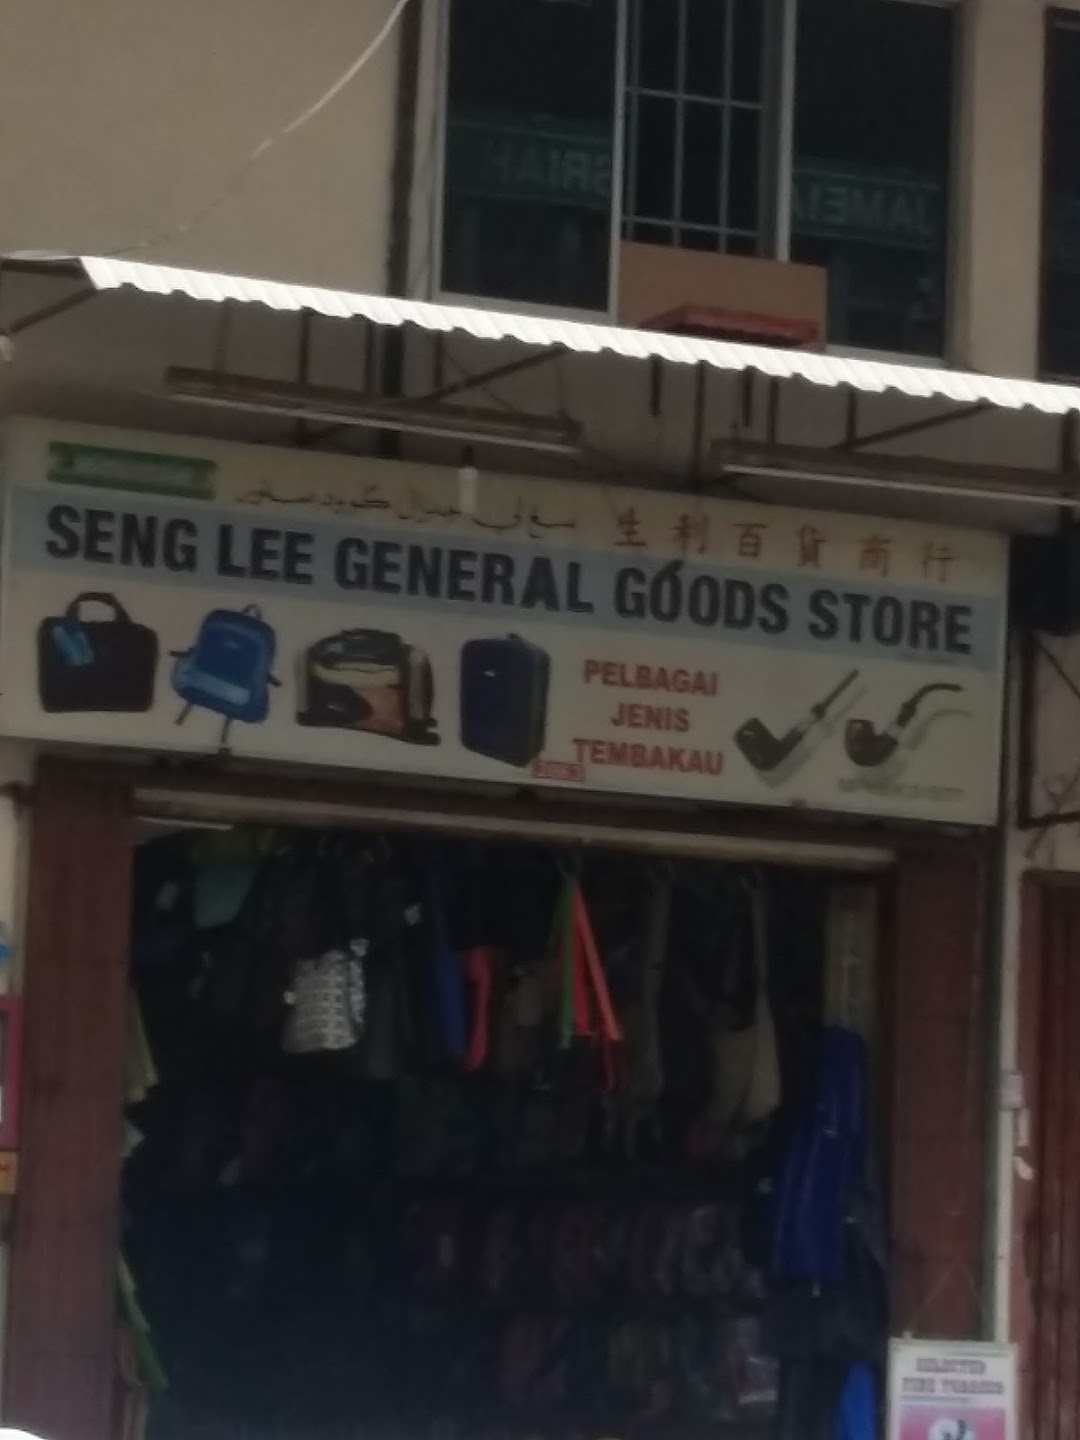 Seng Lee General Goods Store